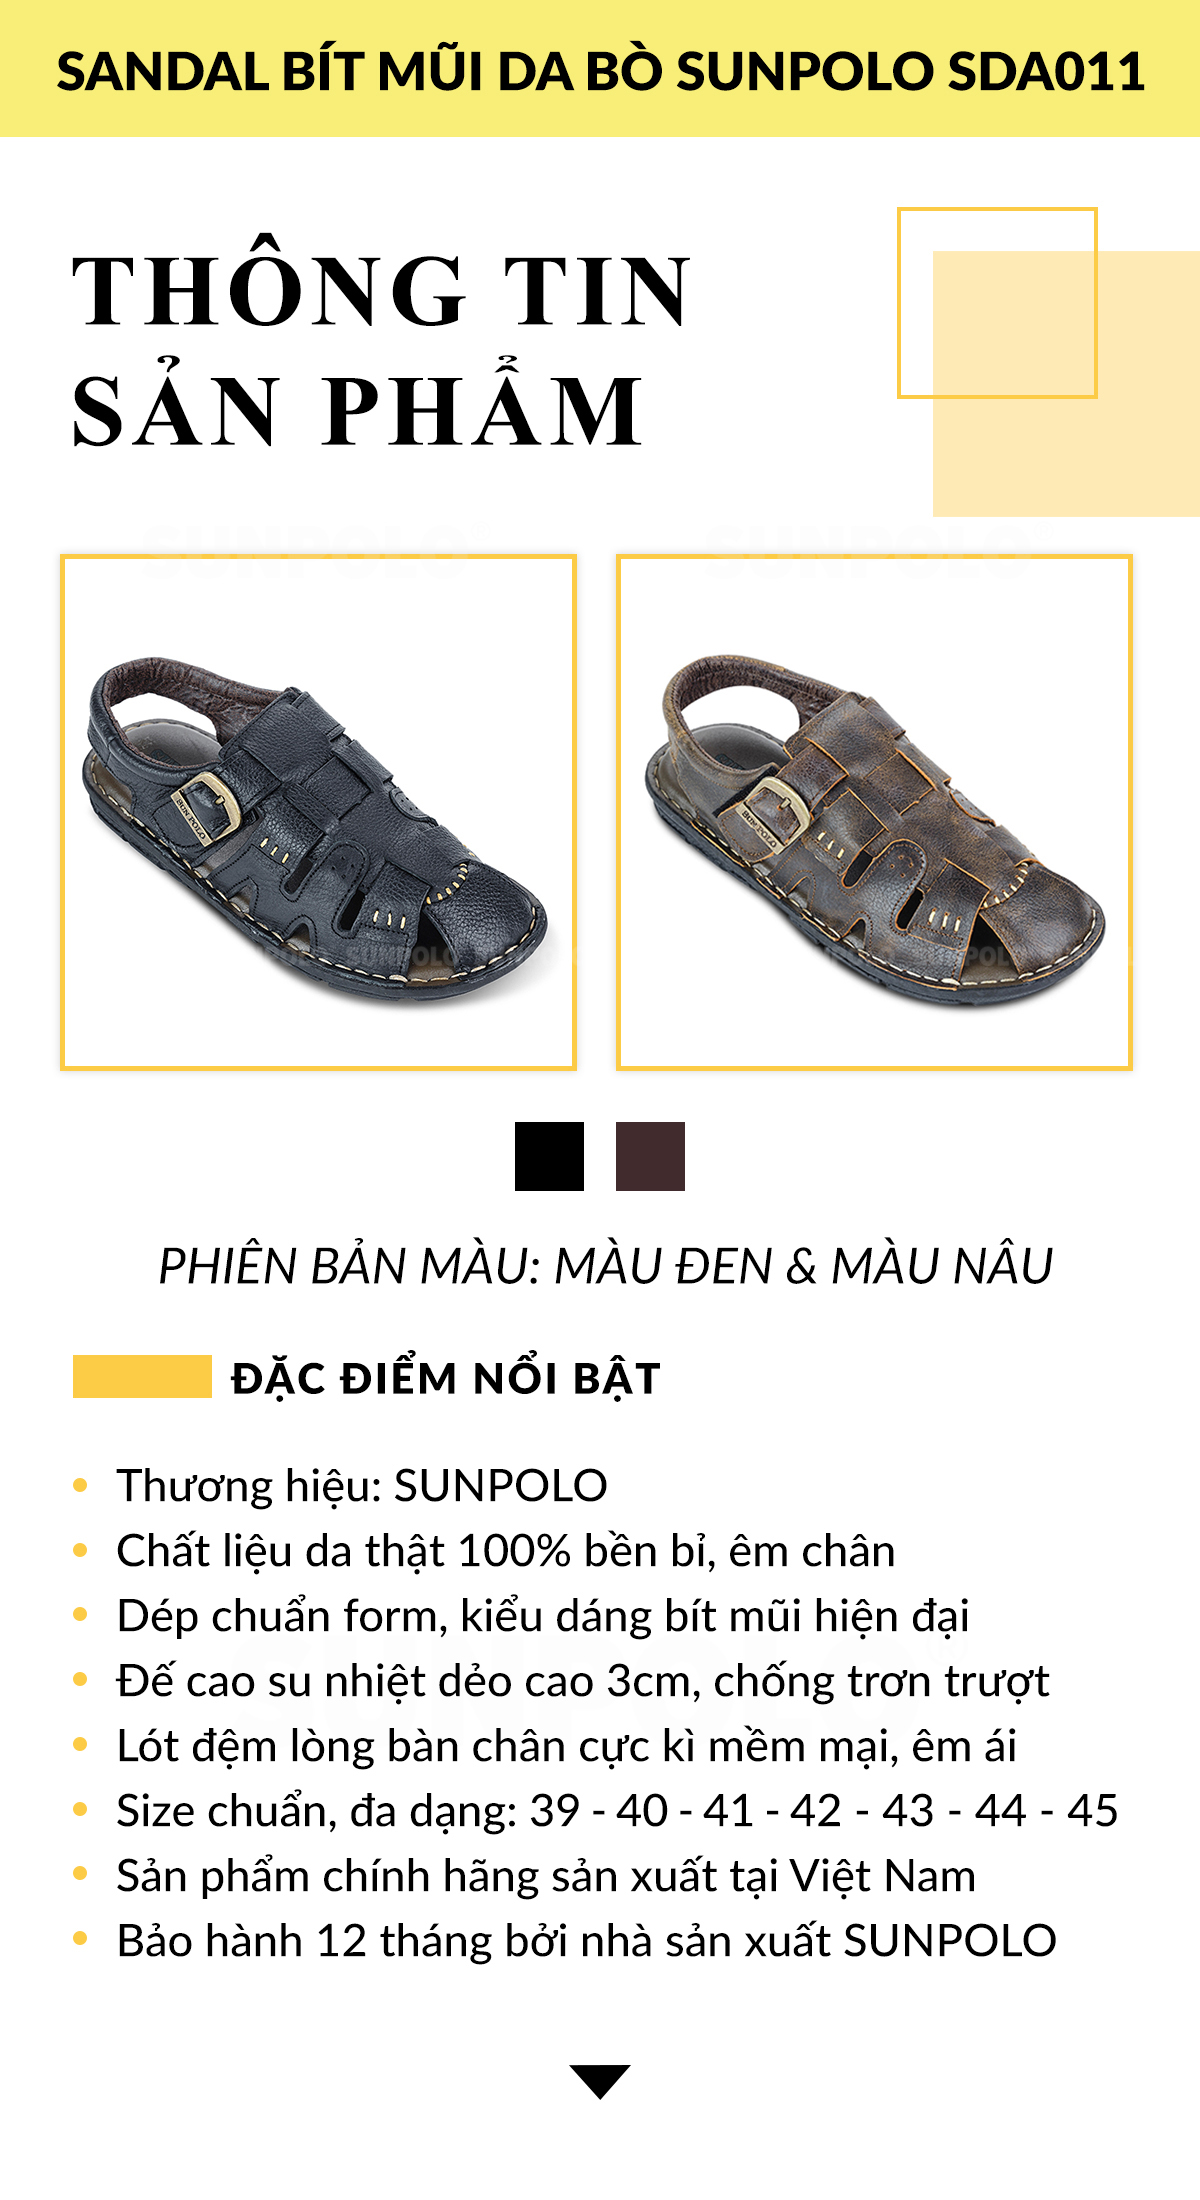 Giày Sandal Nam SUNPOLO SDA011 Cao Cấp - Thông Tin Thương Hiệu